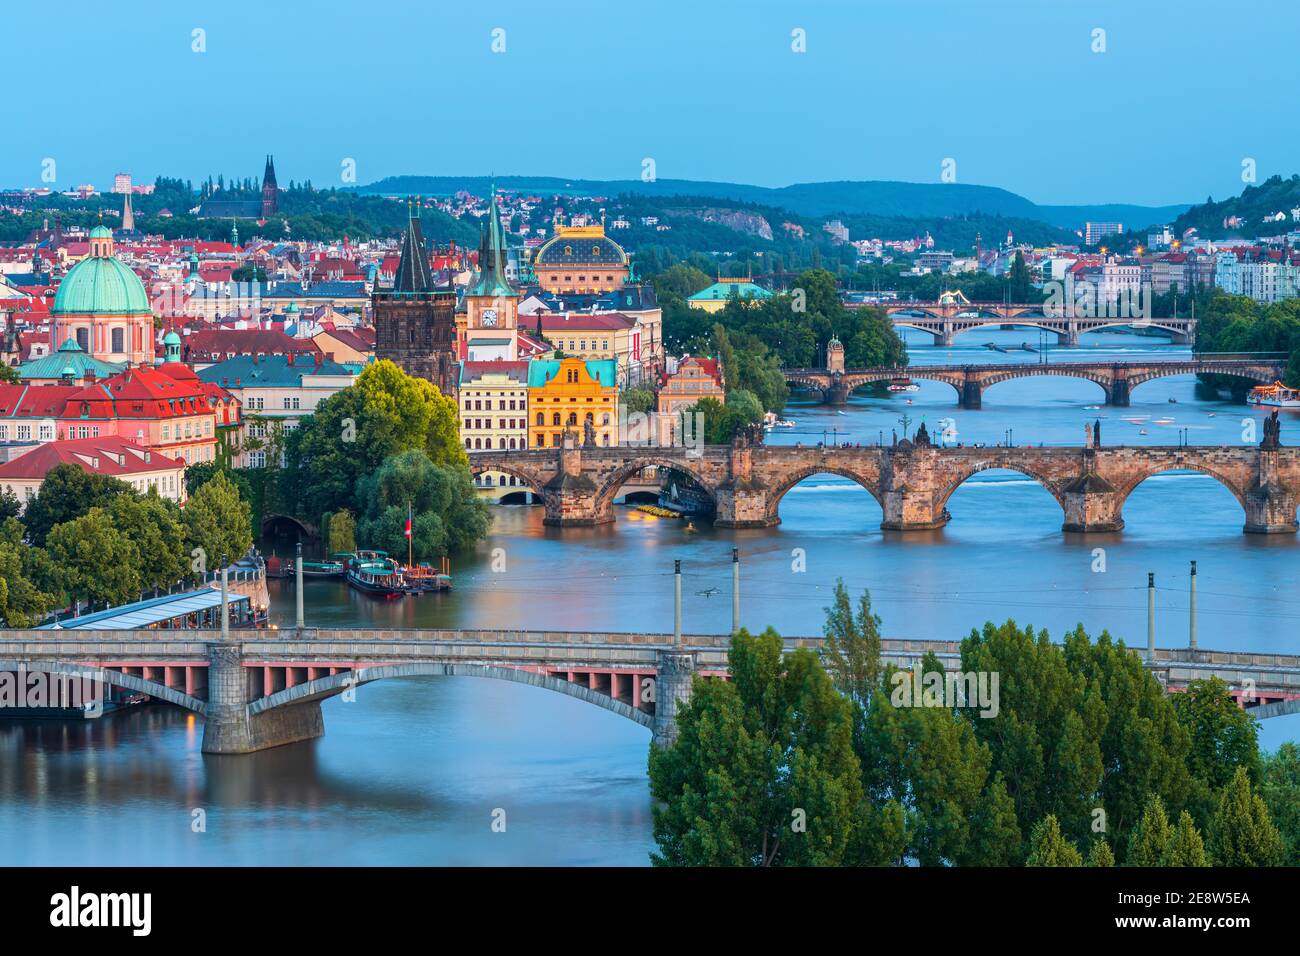 Prag , image des ponts de Prague au-dessus de la Vltava, capitale de la République tchèque, pendant la nuit bleue,Prague,République tchèque Banque D'Images